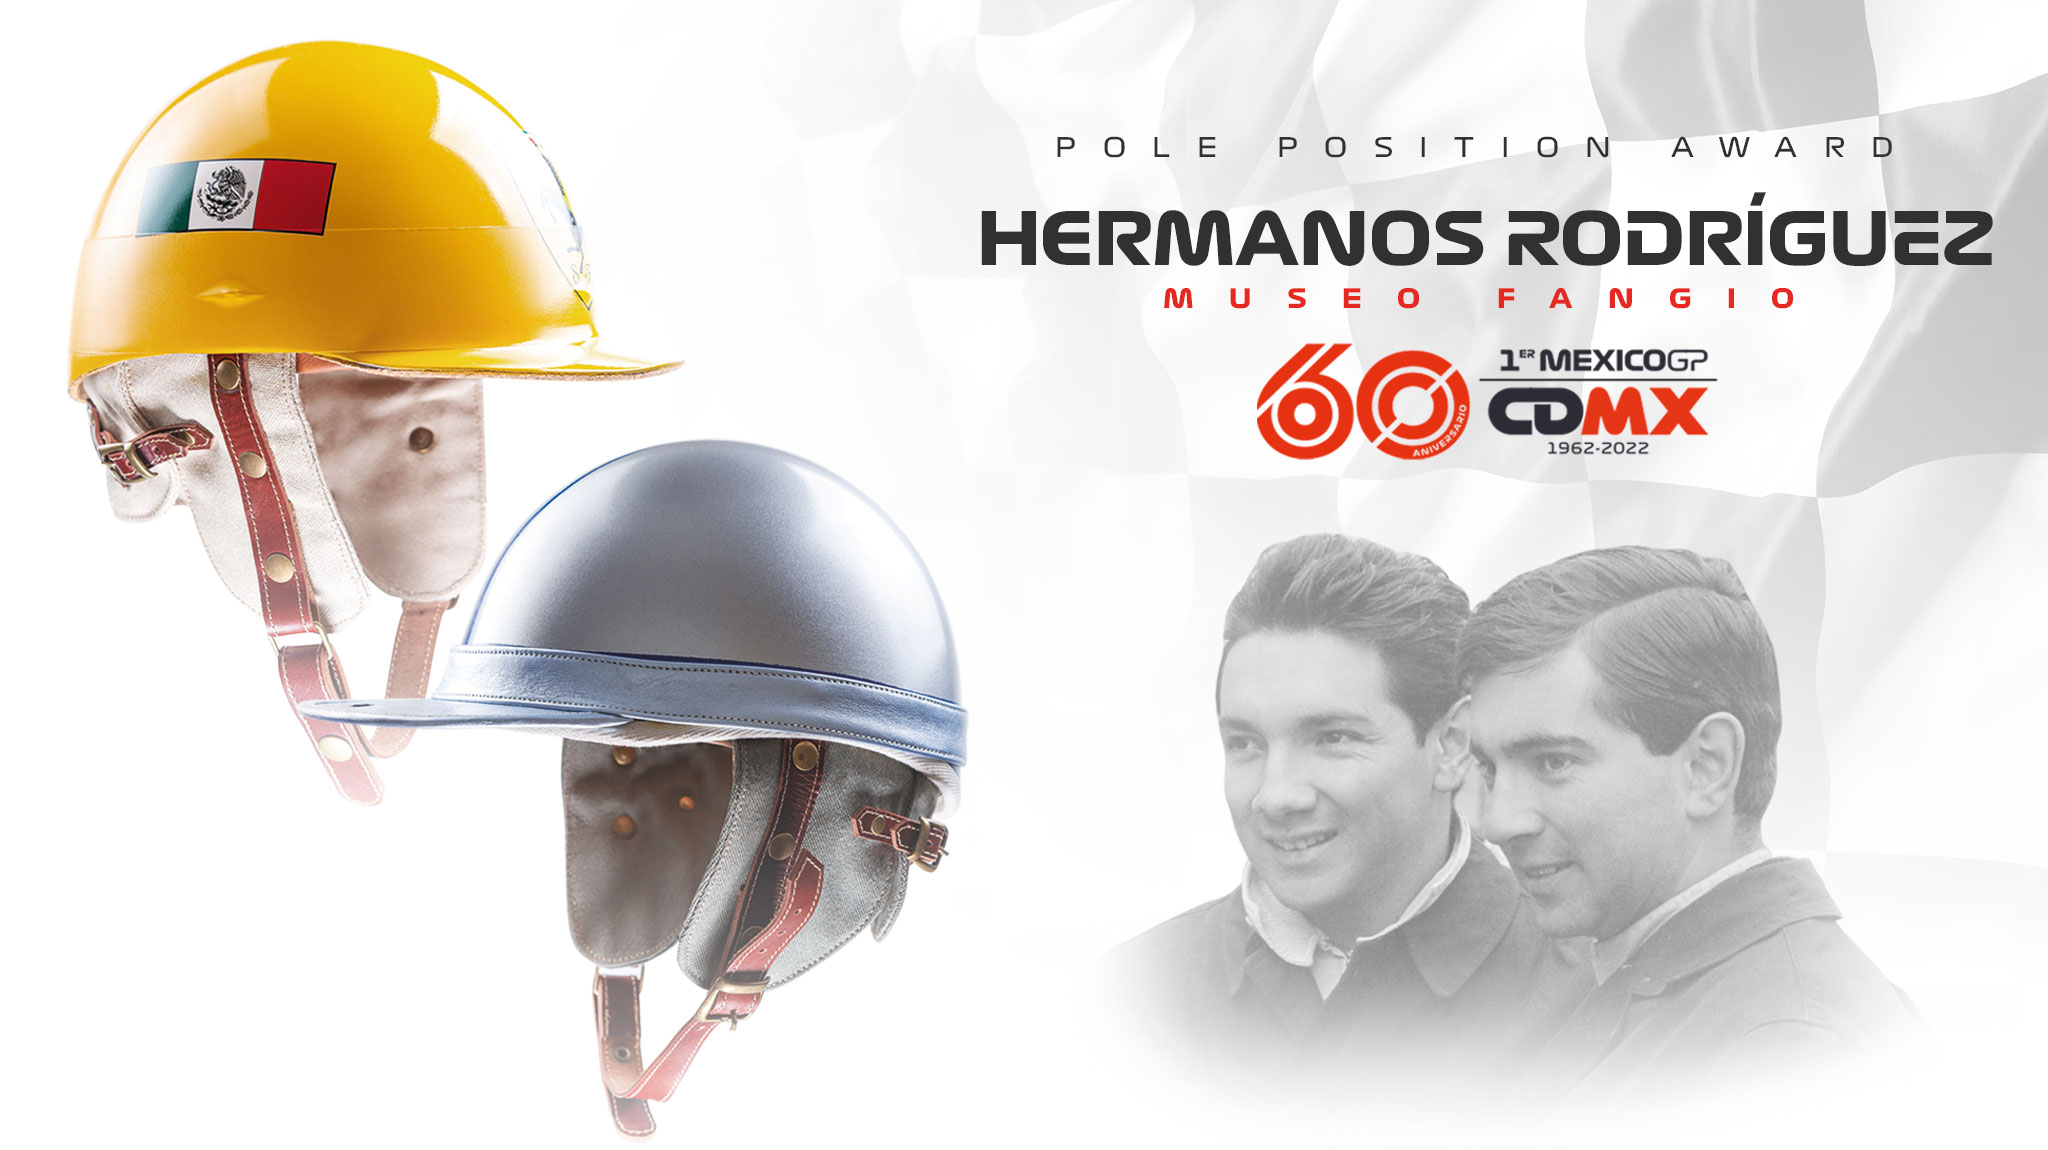 El "poleman" del México GP recibirá cascos de los hermanos Rodríguez